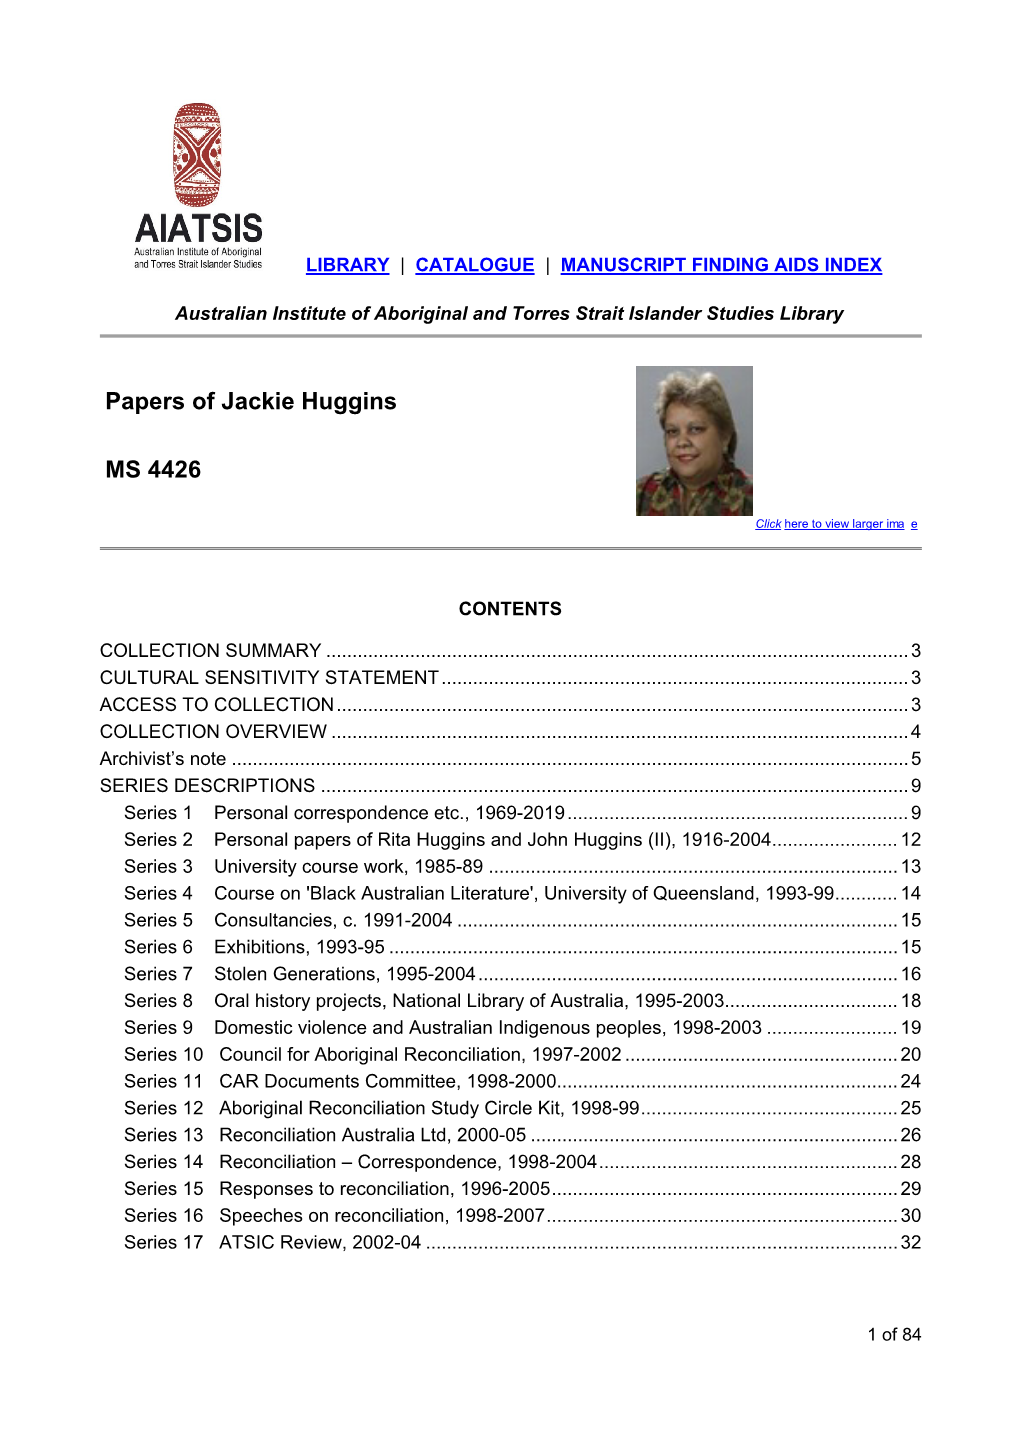 Papers of Jackie Huggins MS 4426